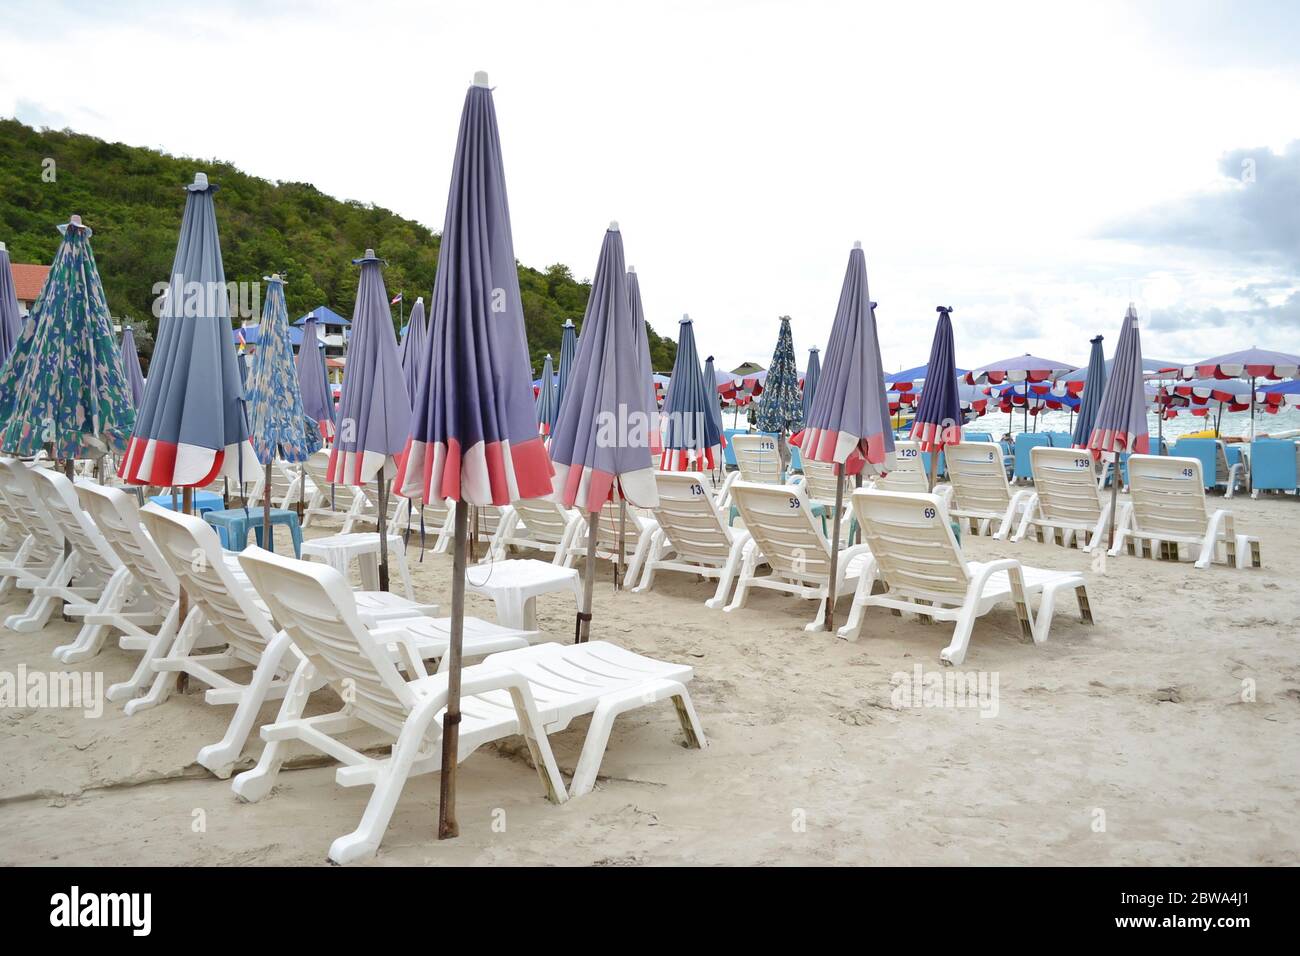 Sedie a sdraio o ombrelloni sulla spiaggia sabbiosa dell'isola di Koh Larn, Pattaya, Thailandia. Ideale per chi viaggia per rilassarsi su un perfetto vac Foto Stock